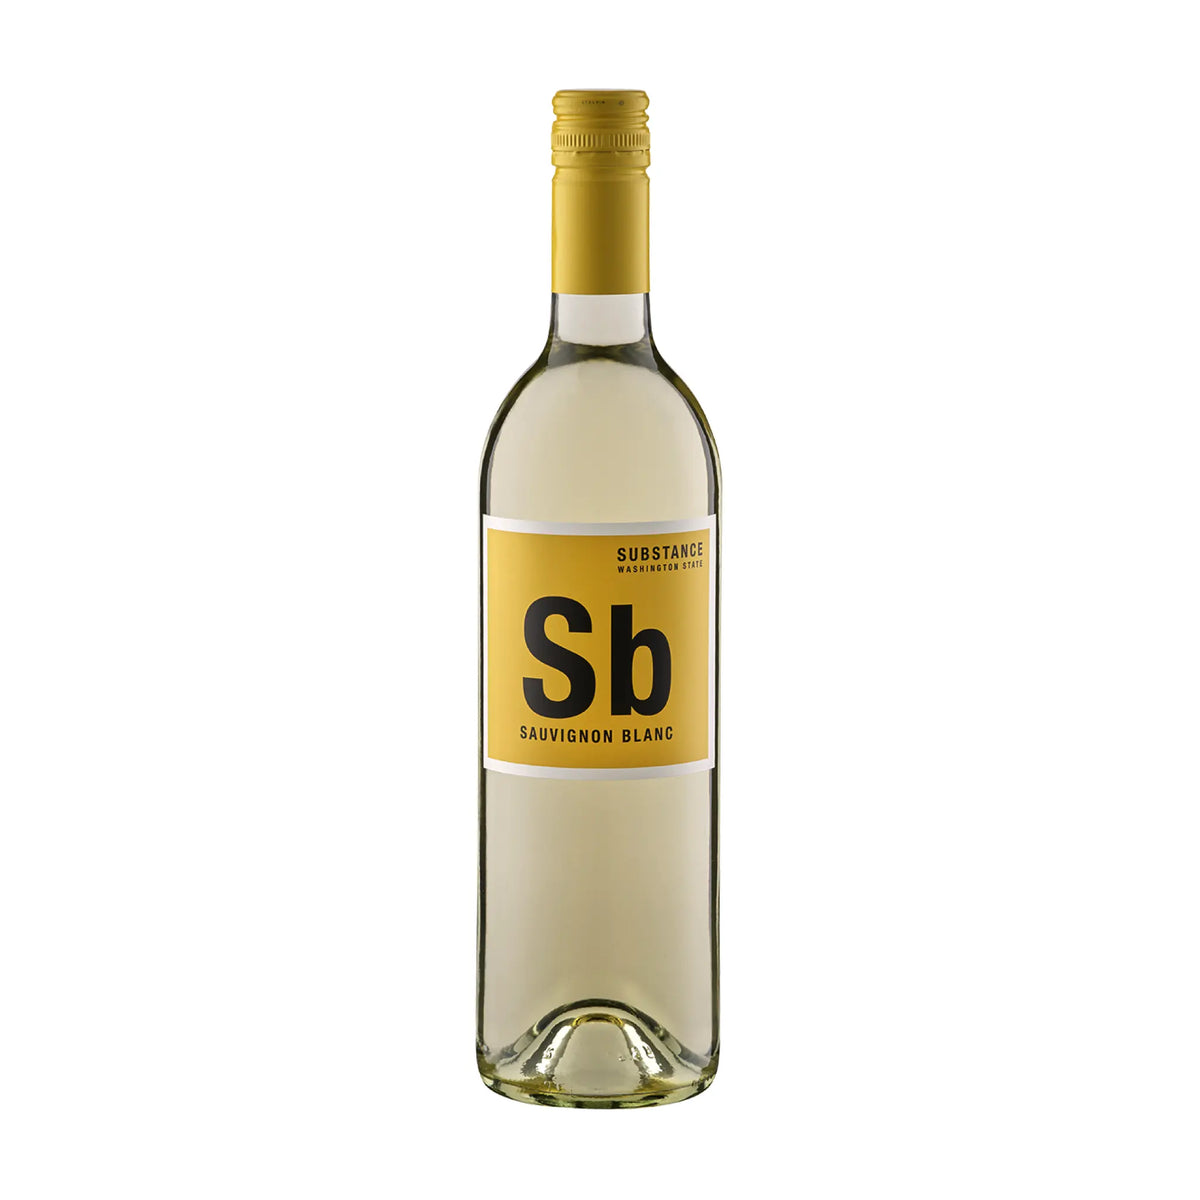 Wines of substance-Weißwein-Sauvignon Blanc-USA-Washington-2021 Substance 'Sb' Sauvignon Blanc-WINECOM